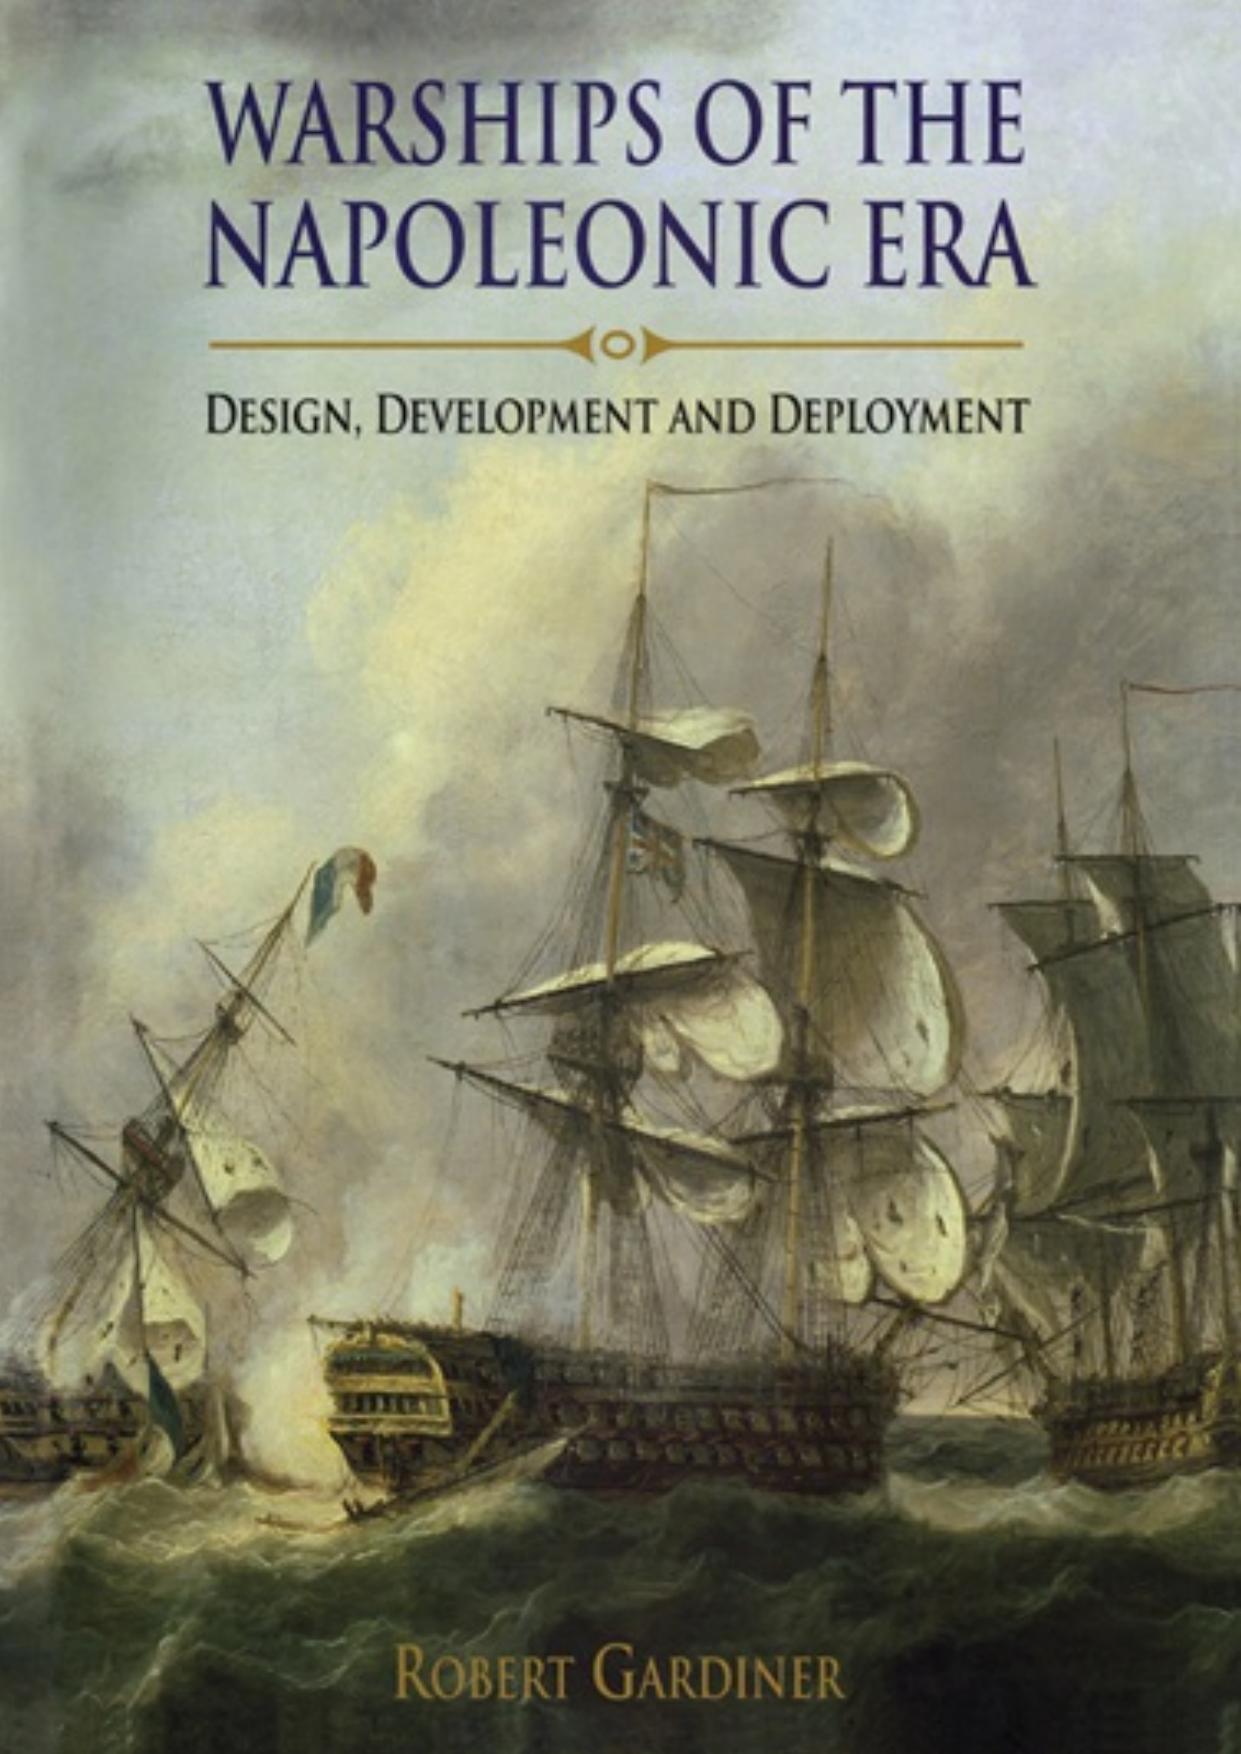 Warships of the Napoleonic Era by Robert Gardiner